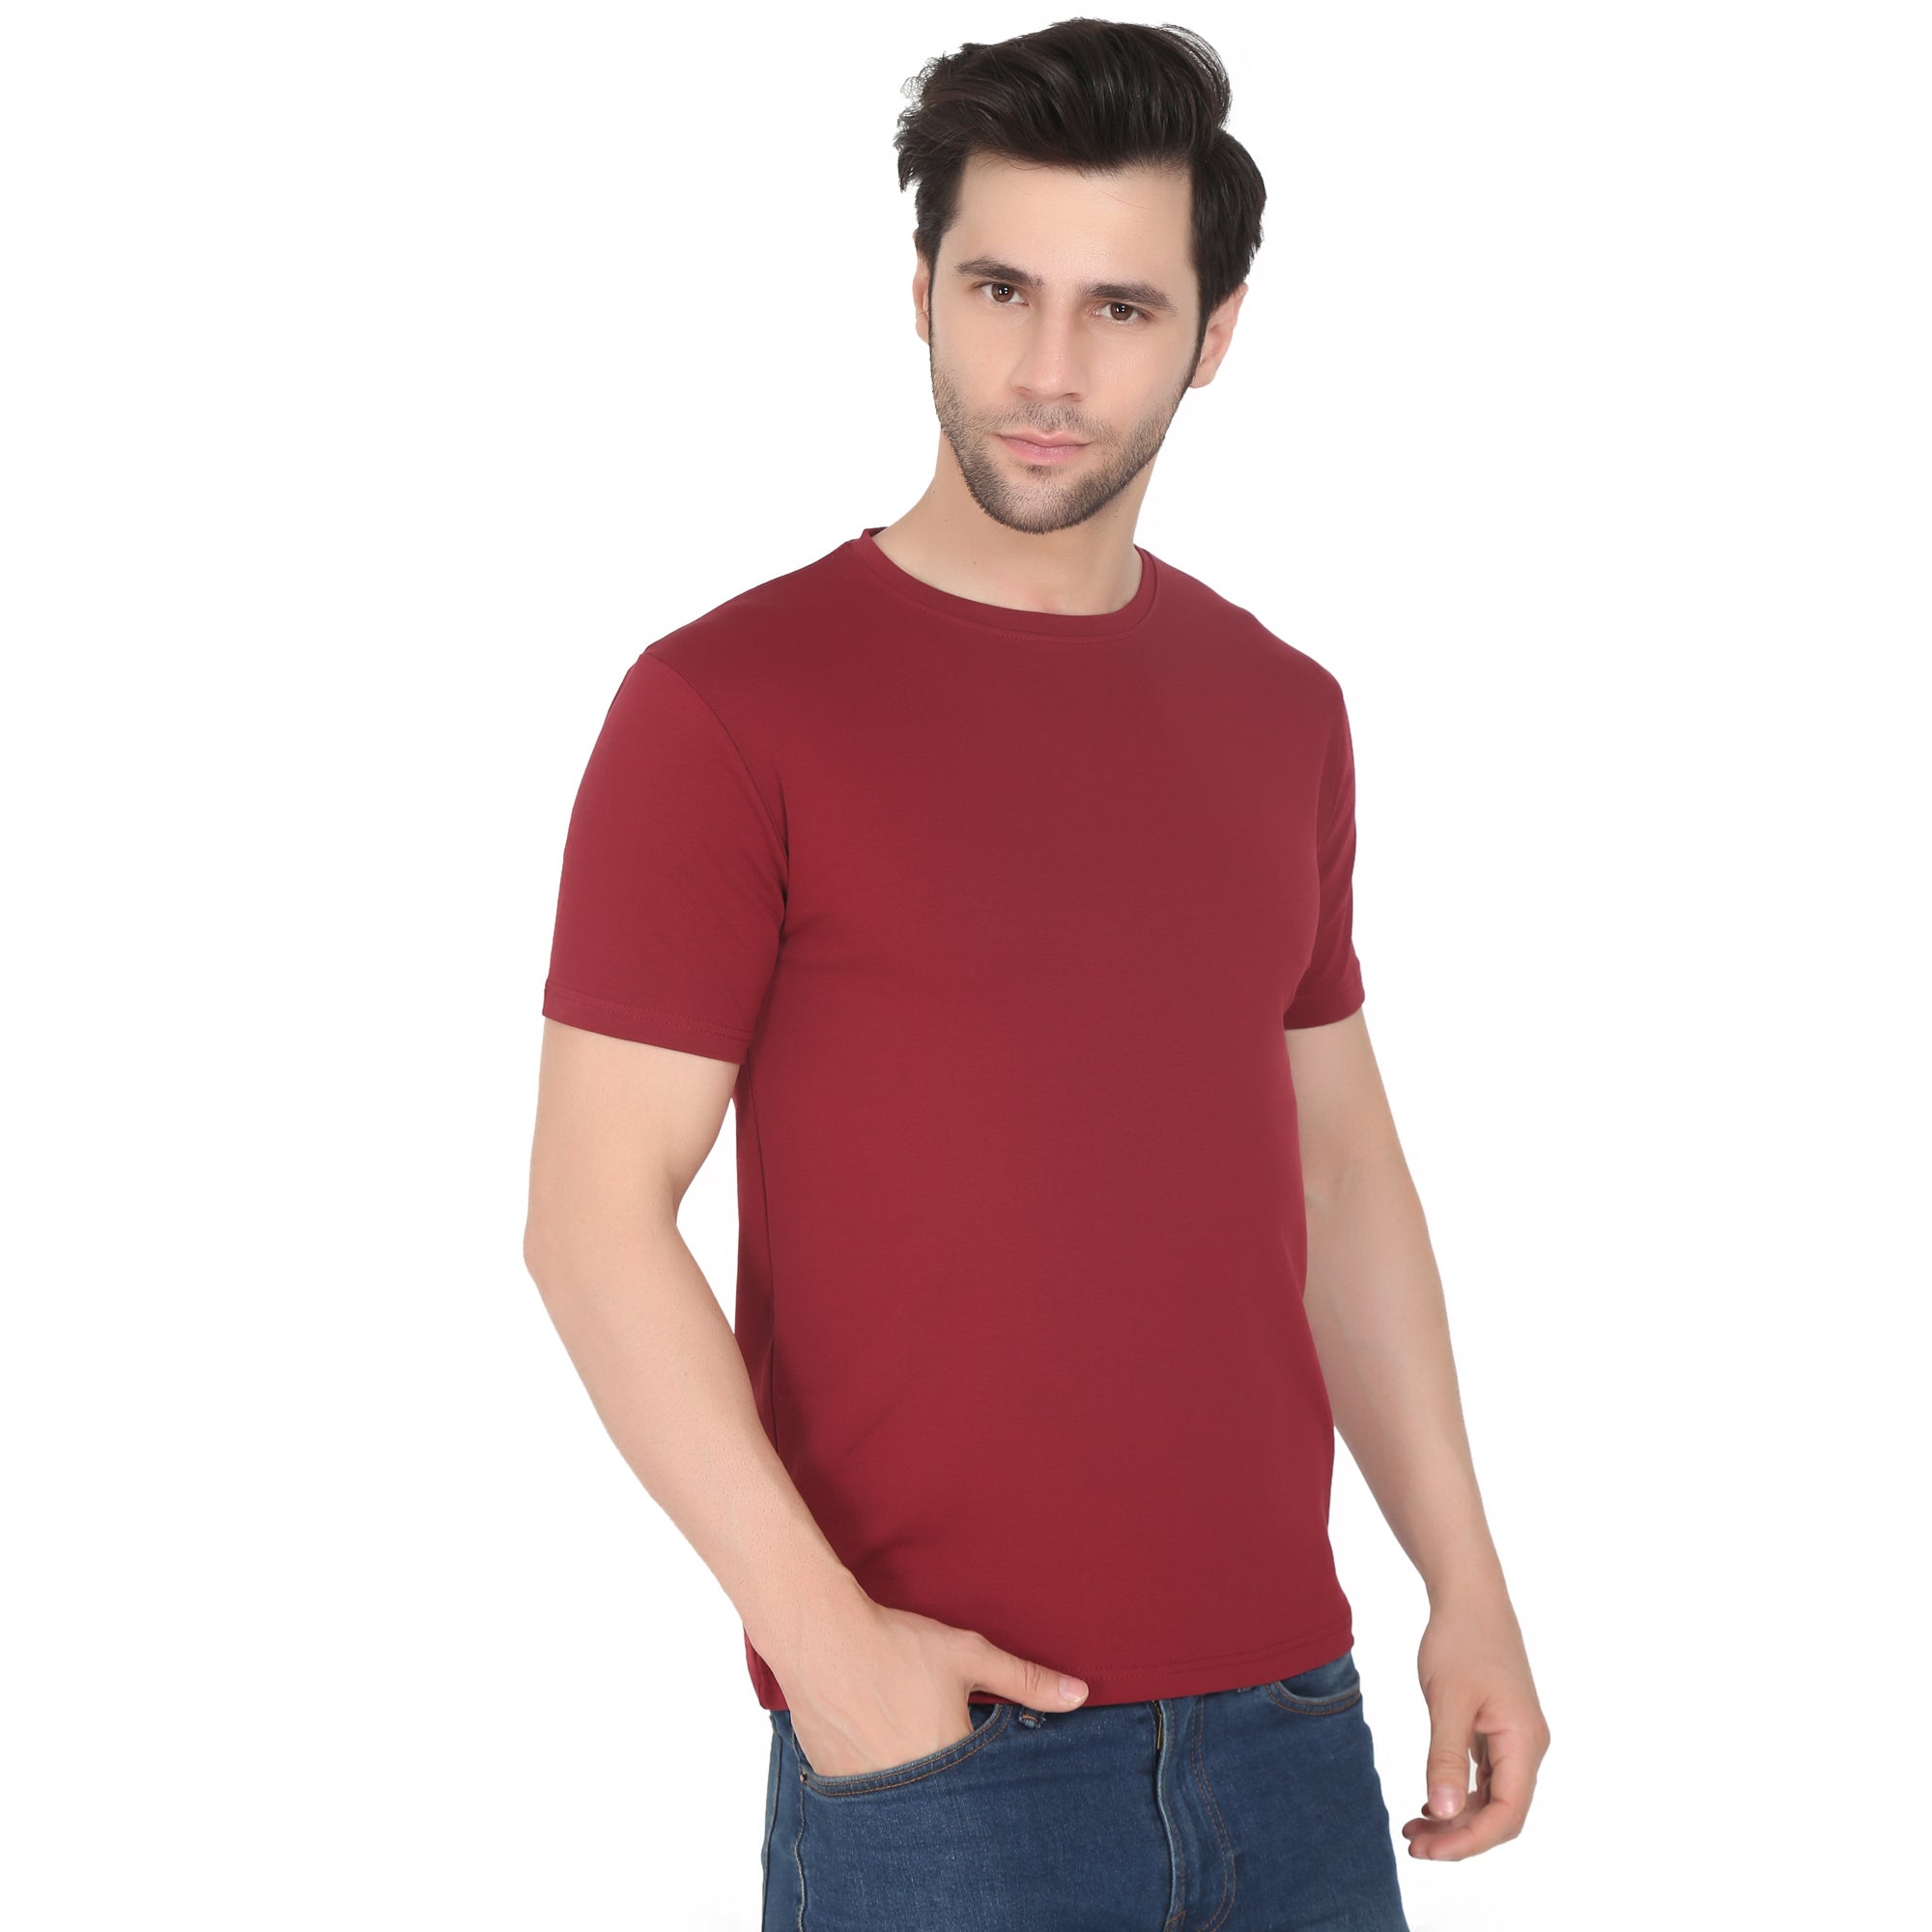 Men Four Way Stretch Cotton Plain T-shirt - Maroon Colour